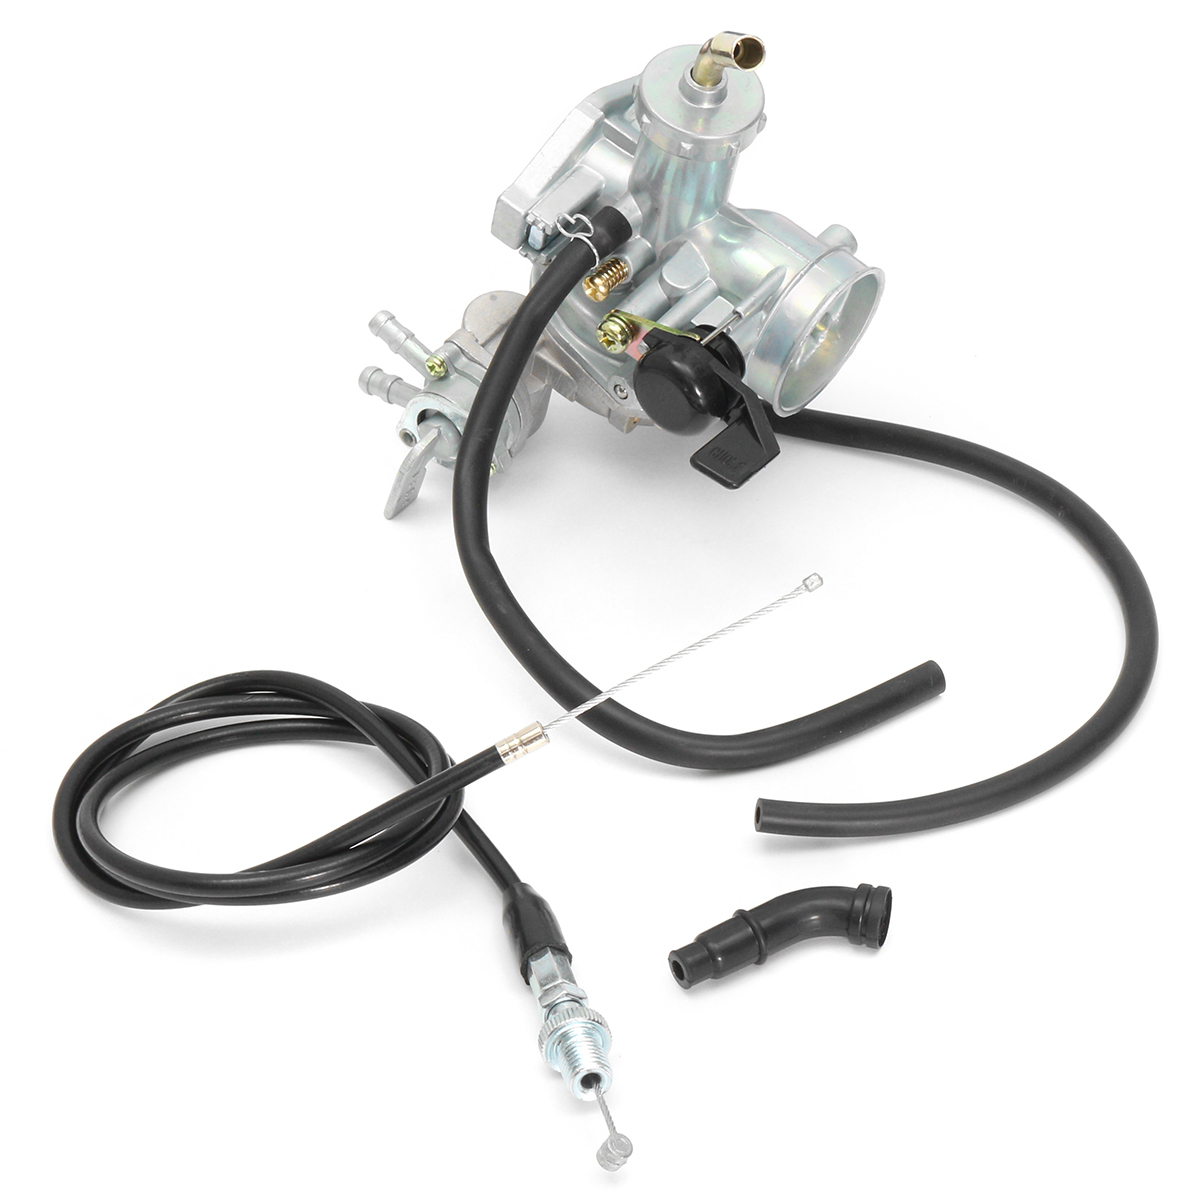 Carburetor Carb Throttle Cable for Honda ATV ATC70 90 110 125 TRX125 - Auto GoShop